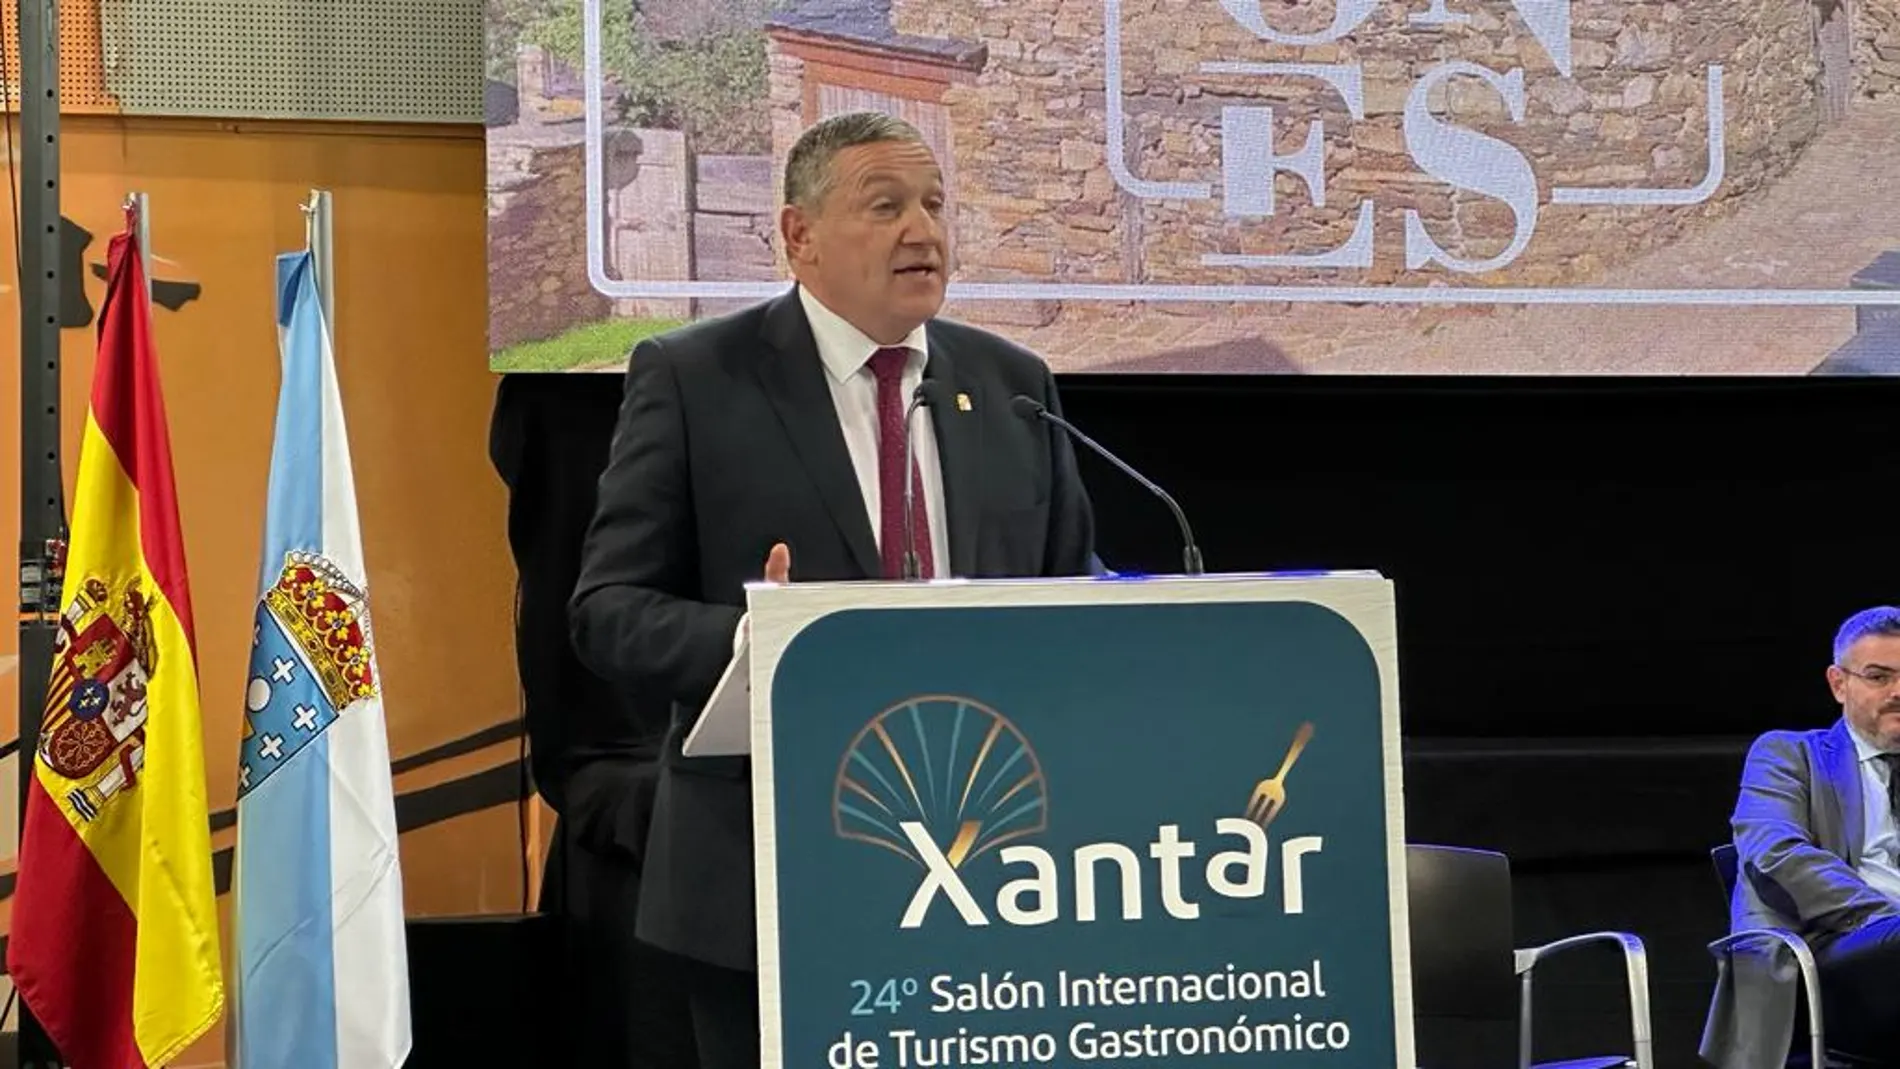 El presidente de la Diputación de Zamora, Javier Faúndez, participa en Xantar